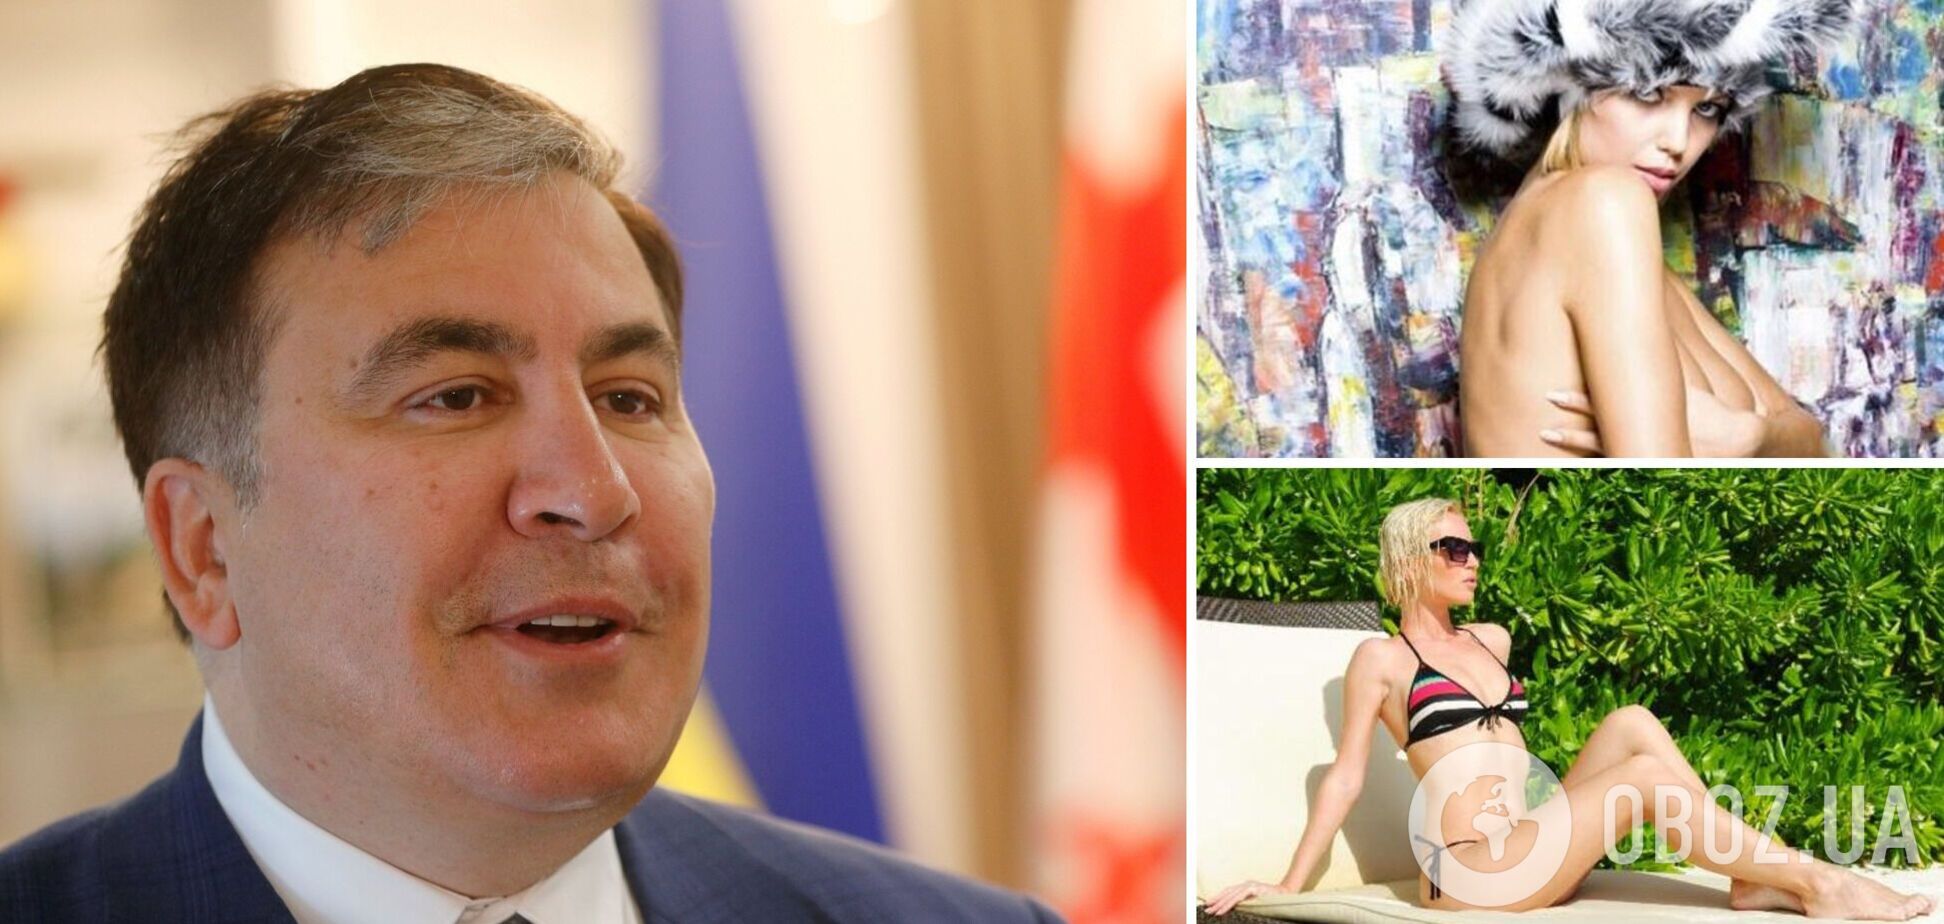 Саакашвили предпочитает украинок